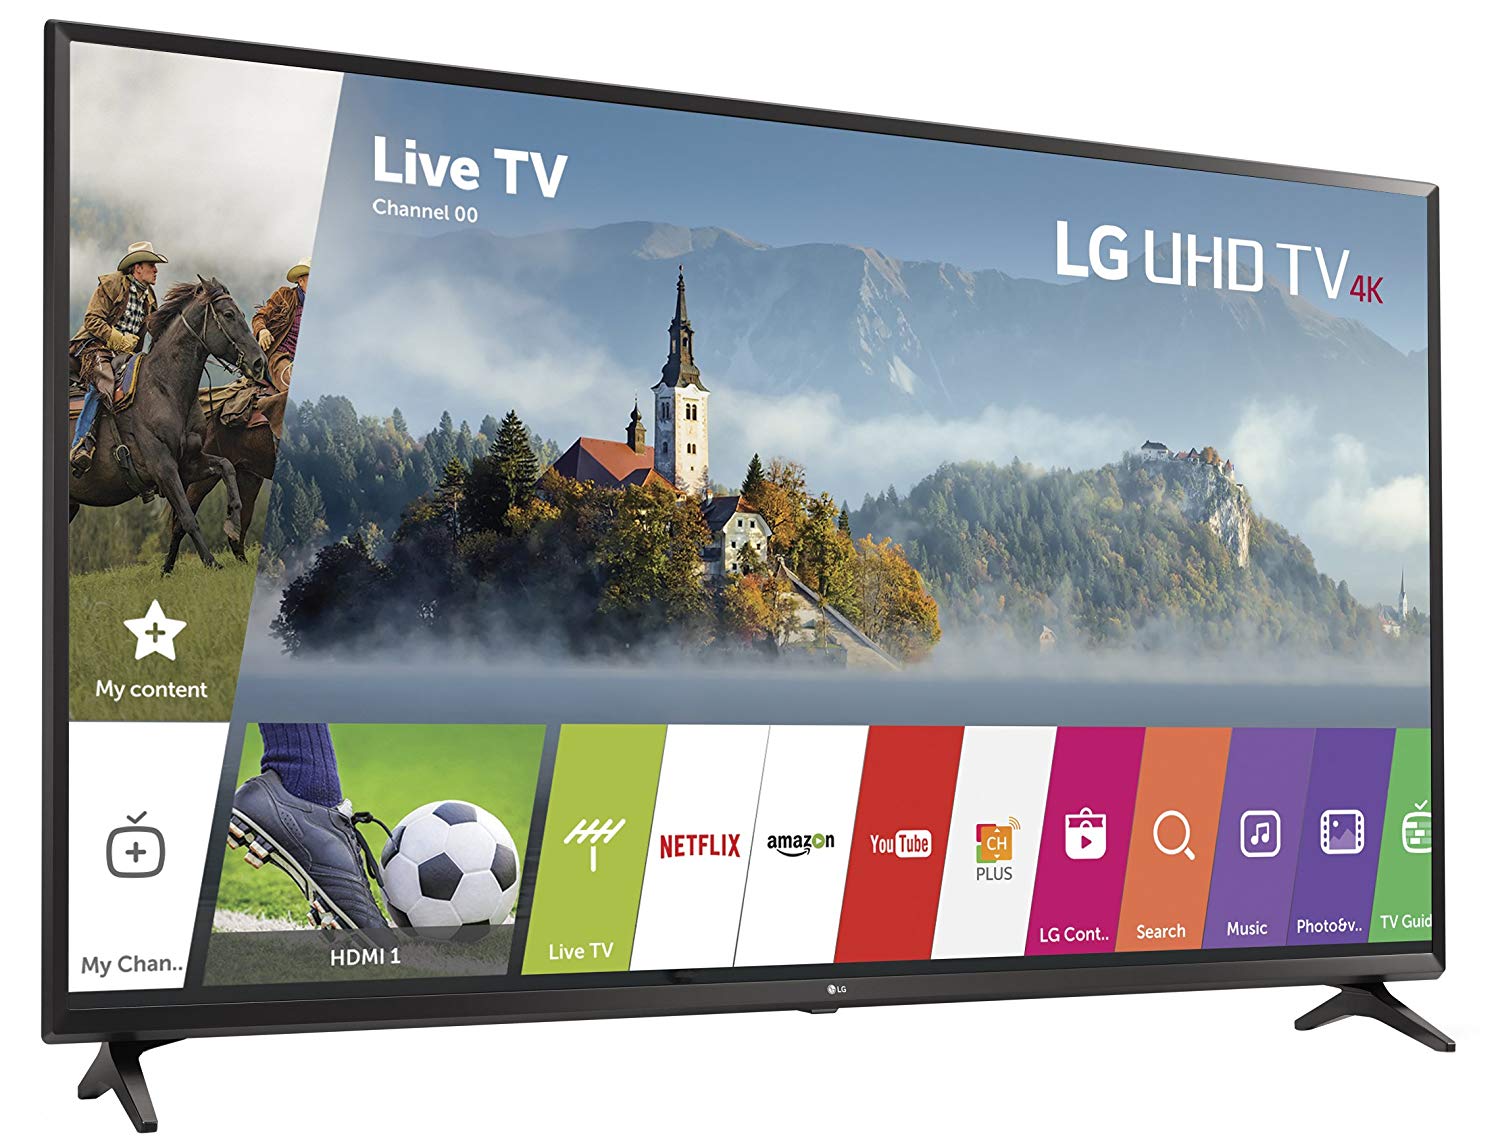 LG Electronics 65UJ6300 65 인치 4K Ultra HD 스마트 LED TV (2017 년 모델)